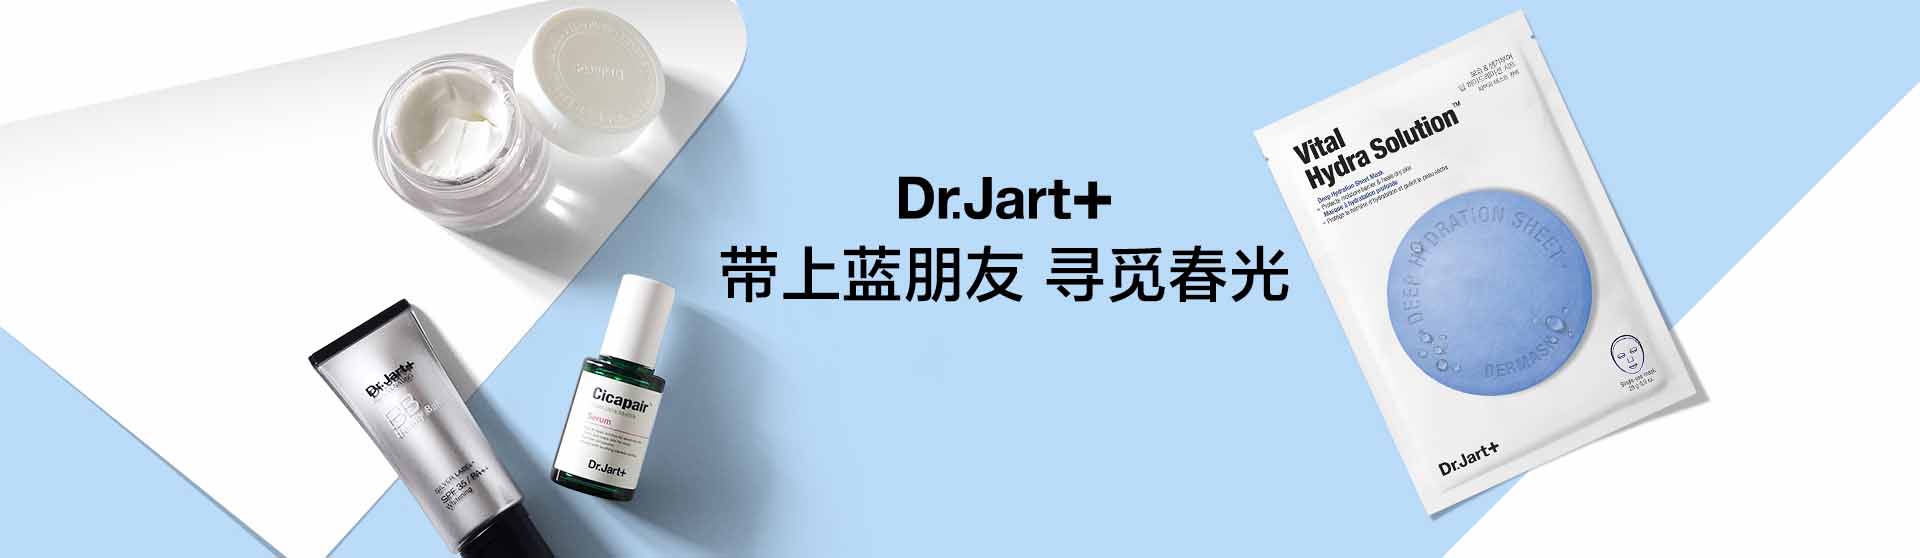 蒂佳婷_化妆护肤品成分介绍_Dr.Jart+是哪个国家的品牌_是什么牌子